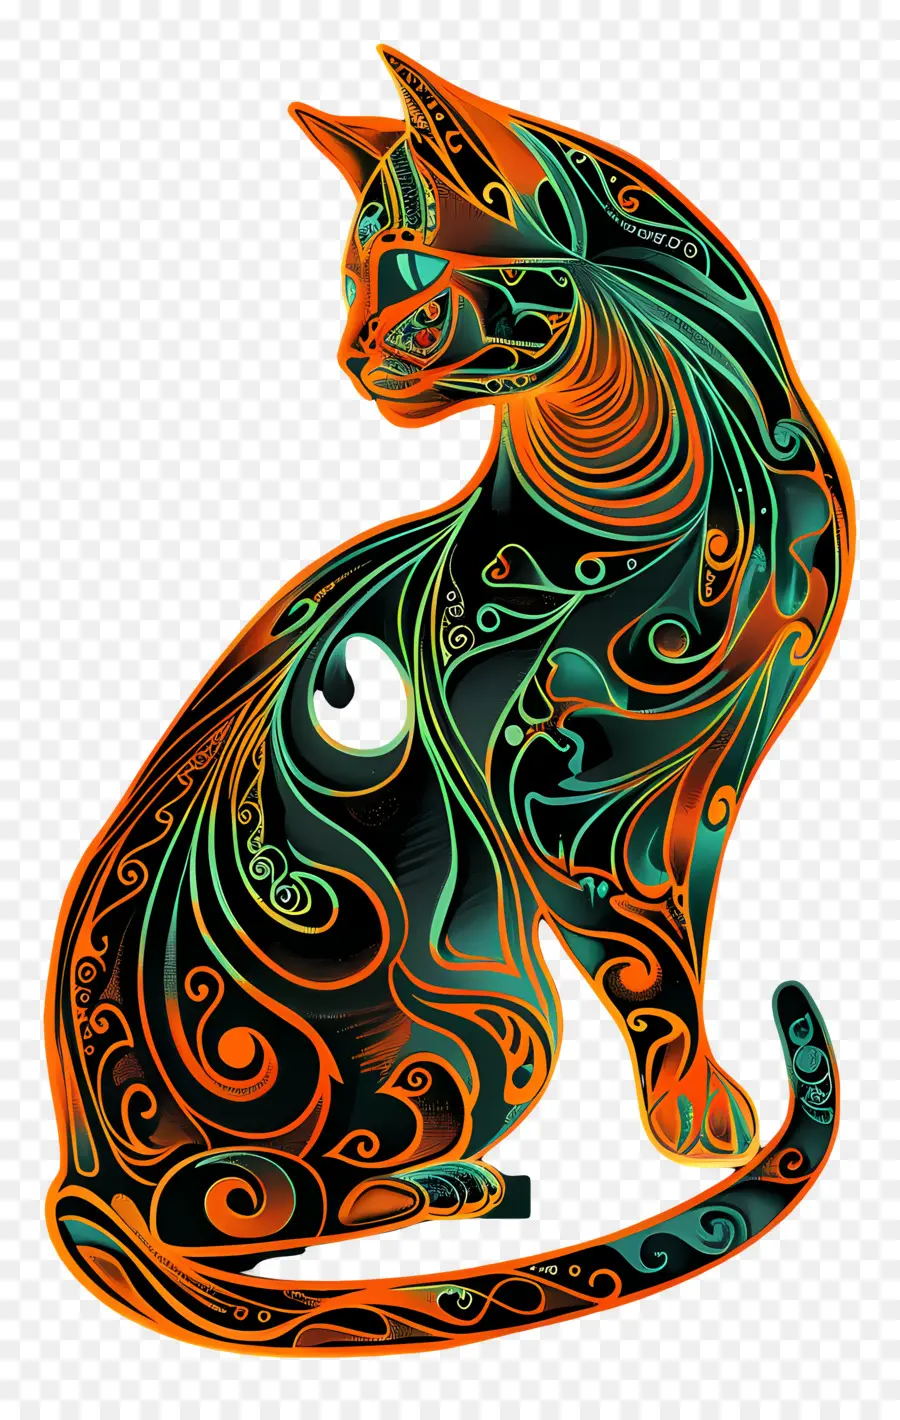 Linienkunstkatze verziertes Musterfell - Katze mit kunstvollem Design in meditativer Pose